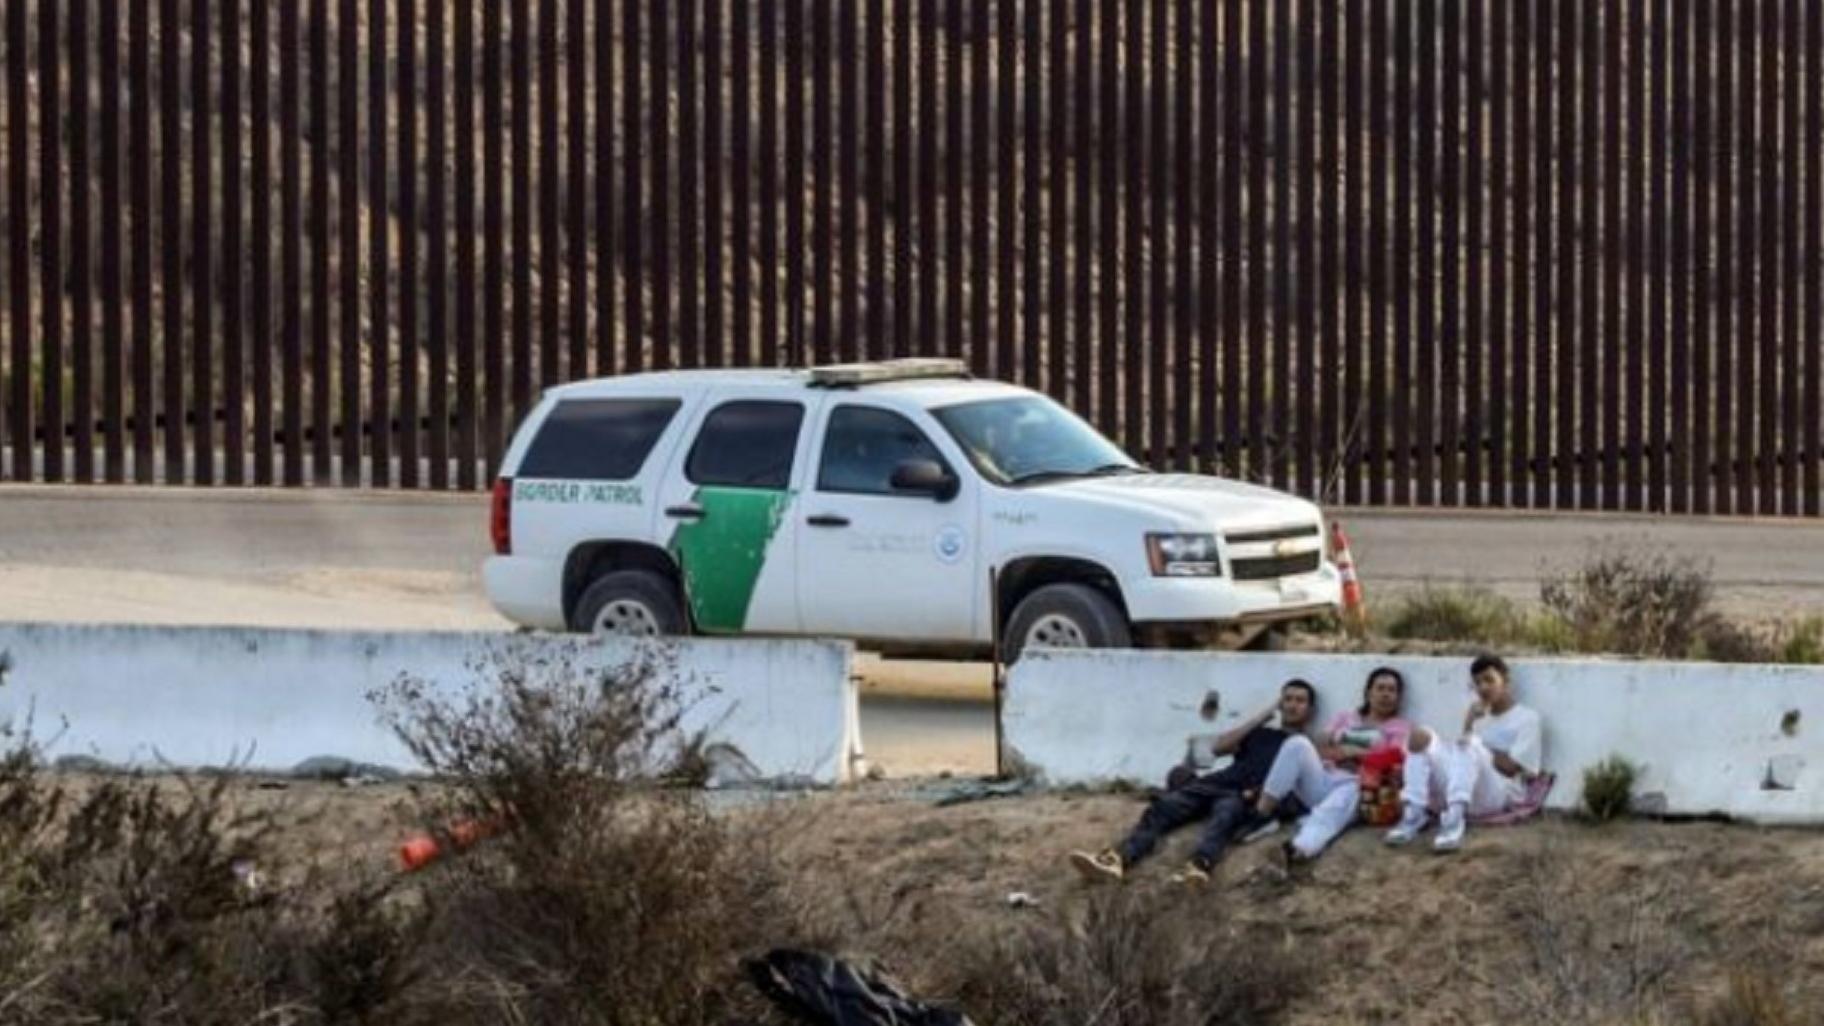 Patrulla fronetriza en frontera sur de Estados Unidos